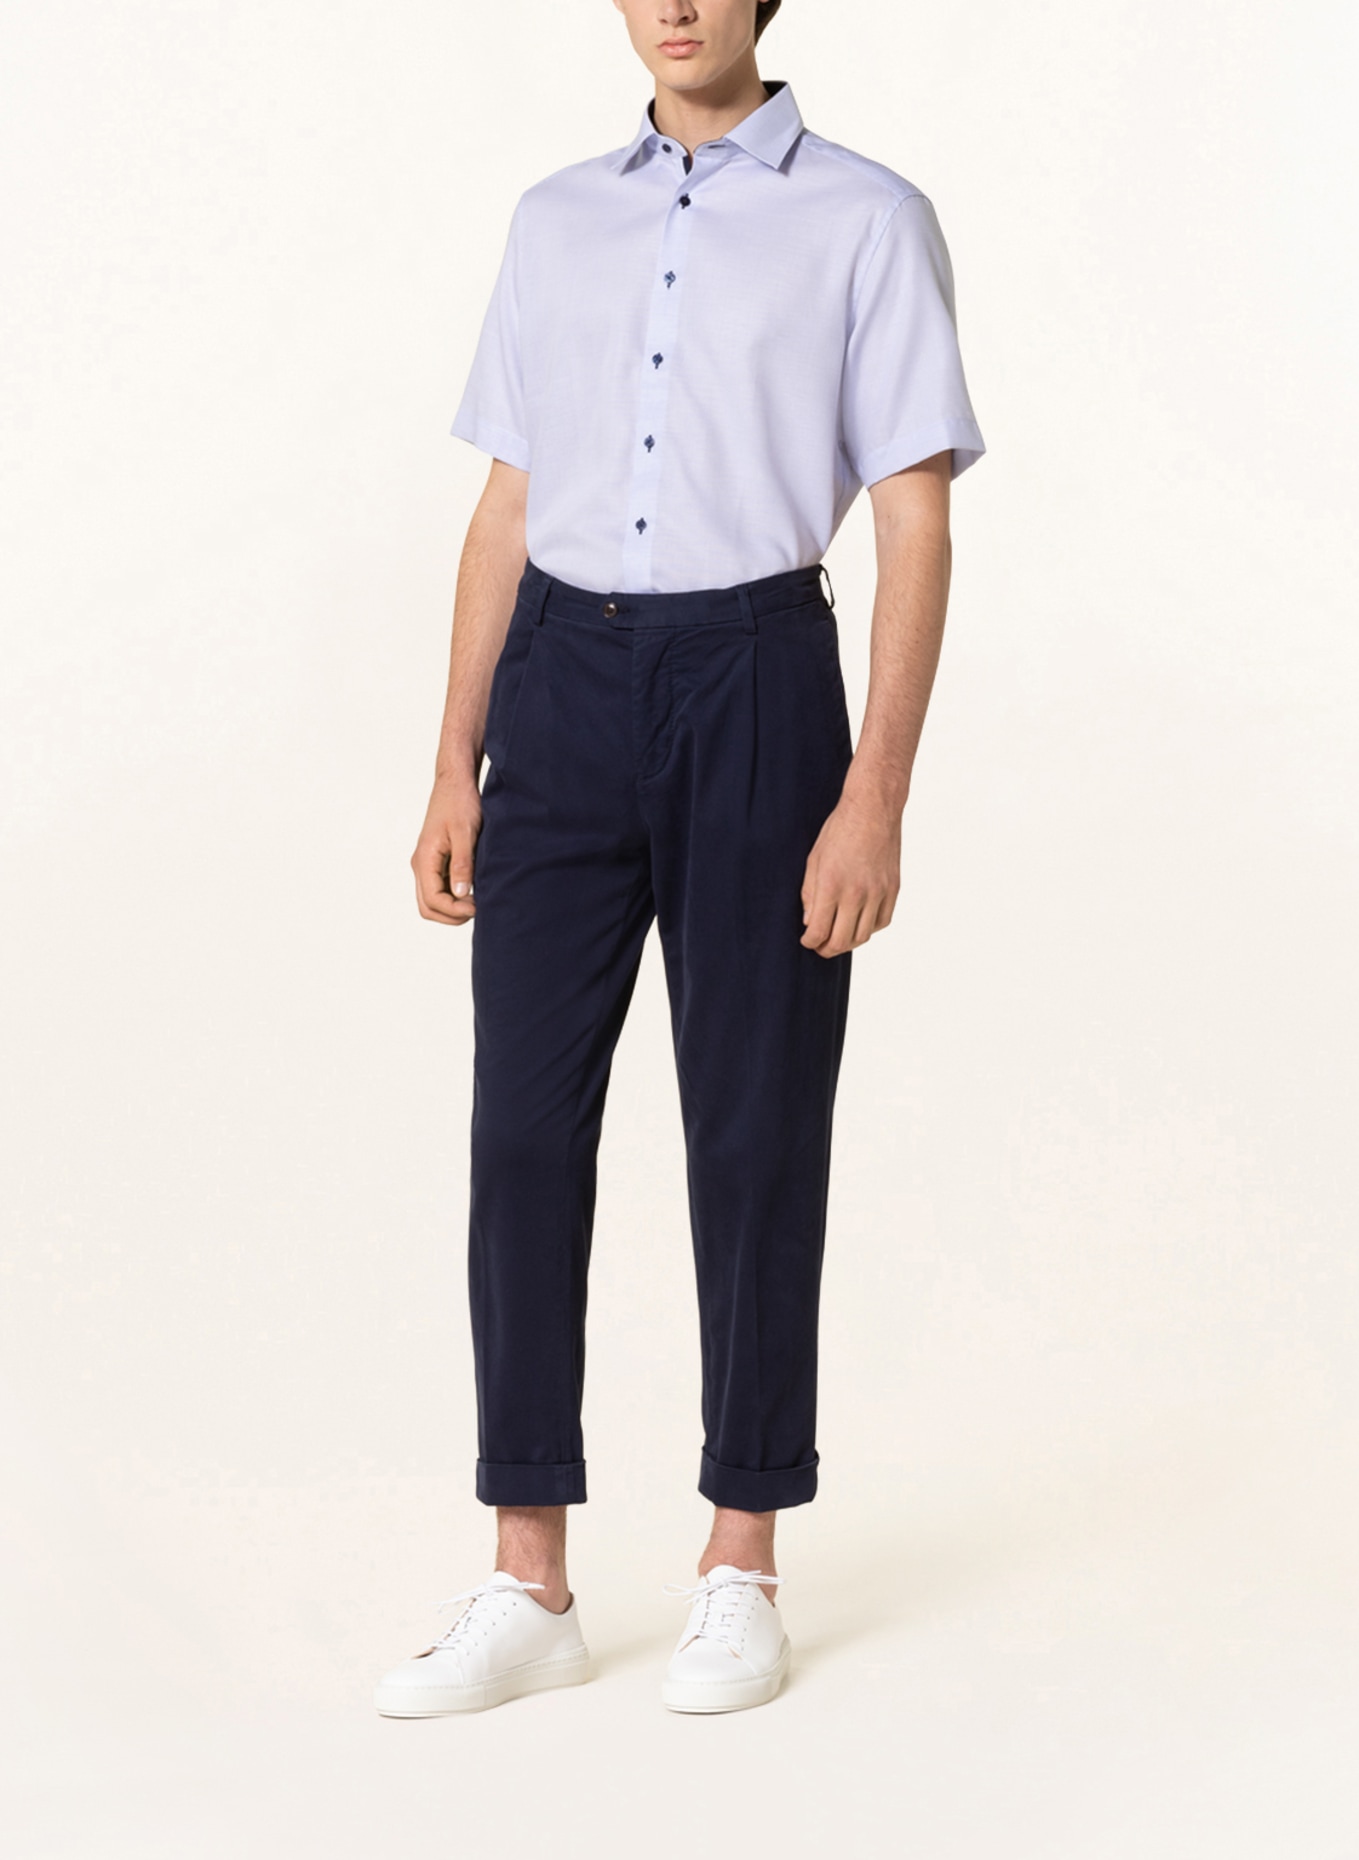 ETERNA Short-sleeved shirt modern fit, Color: LIGHT BLUE (Image 2)